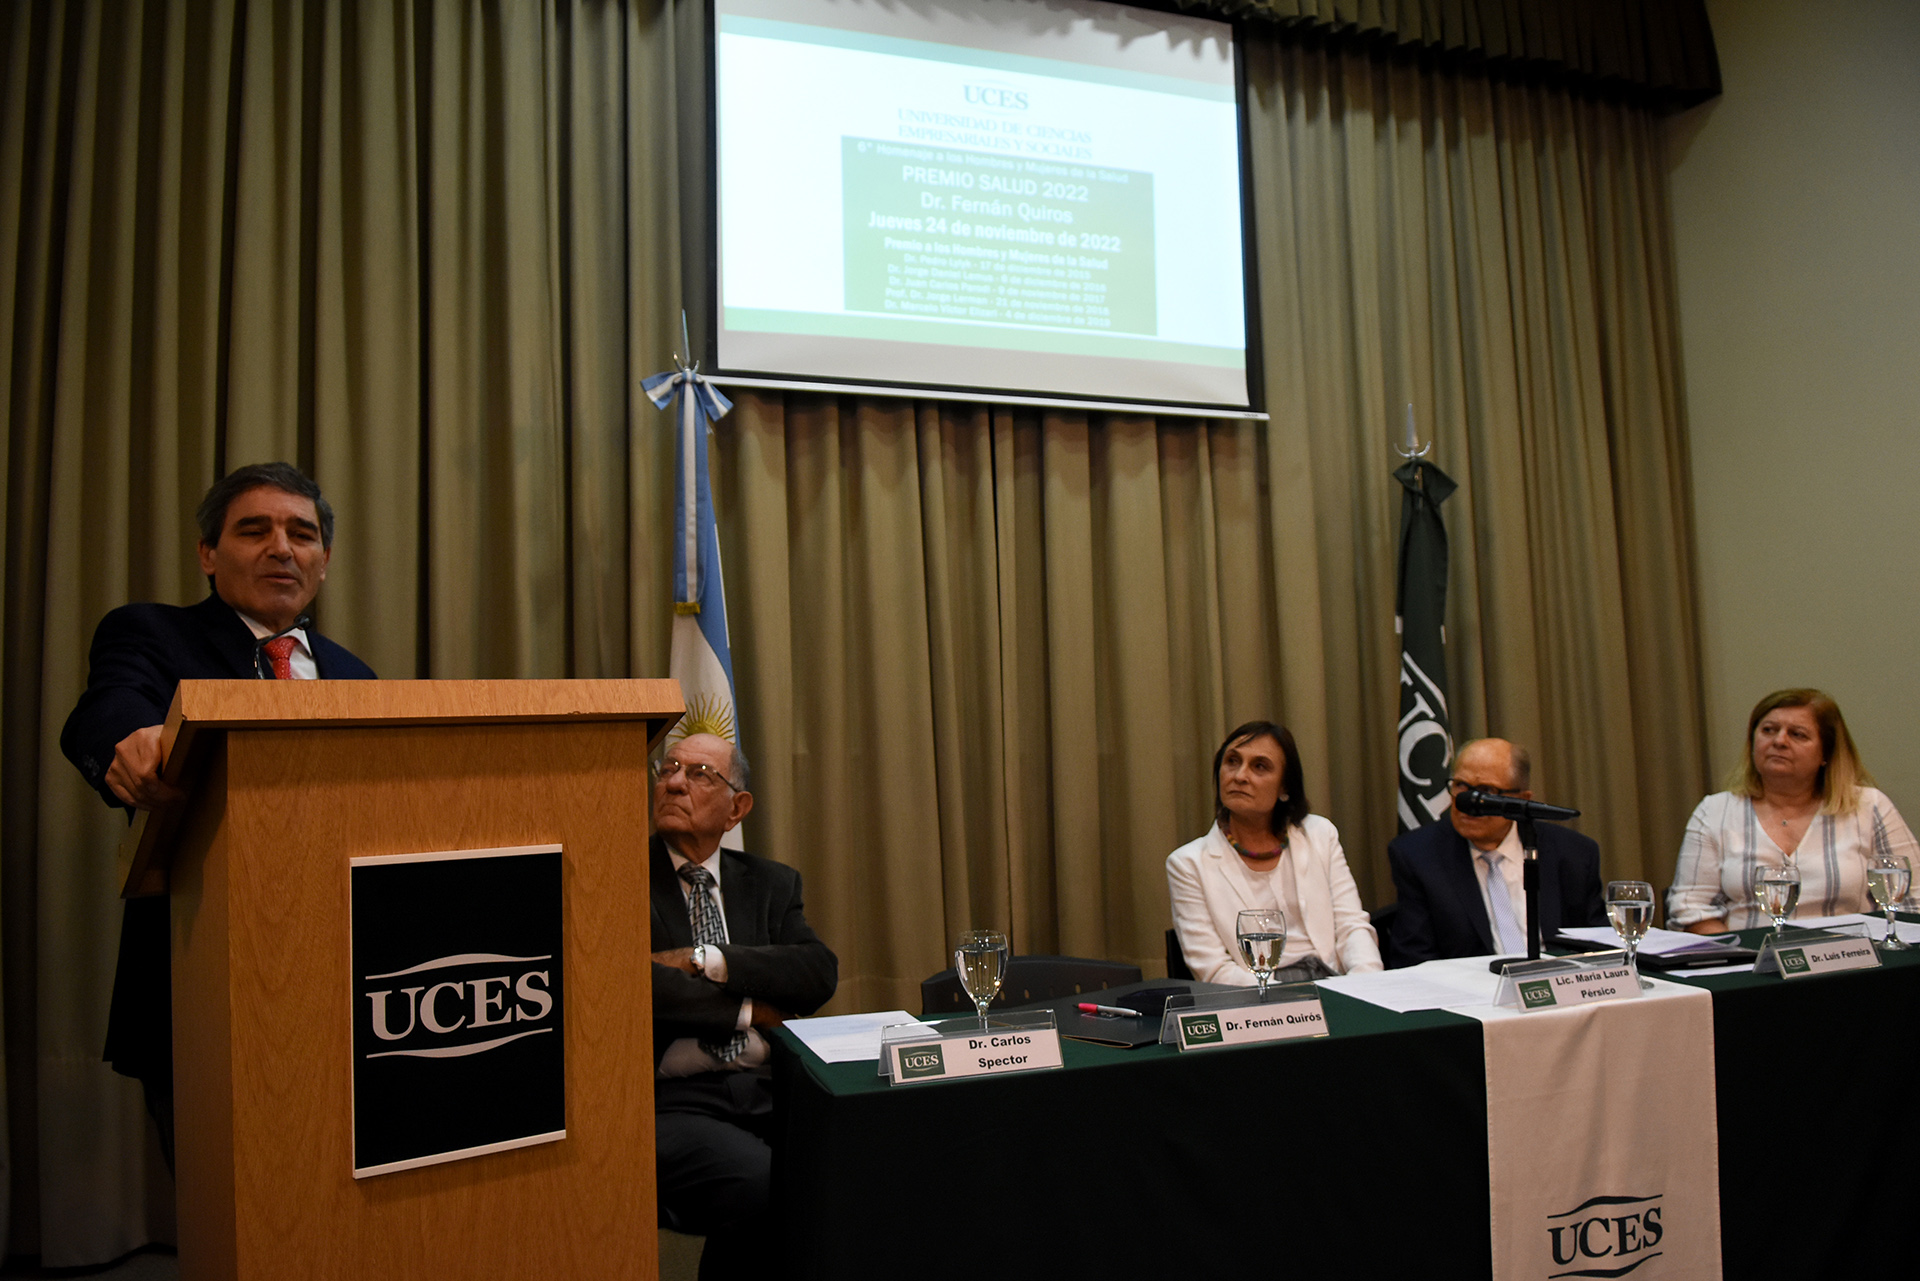 El Dr. Fernán González Bernaldo de Quirós fue galardonado por la Universidad de Ciencias Empresariales y Sociales (UCES) con el Premio Salud, en reconocimiento a su trayectoria y contribución al cuidado de la salud. El acto se llevó a cabo en Libertad 926, edificio del Rectorado de la UCES